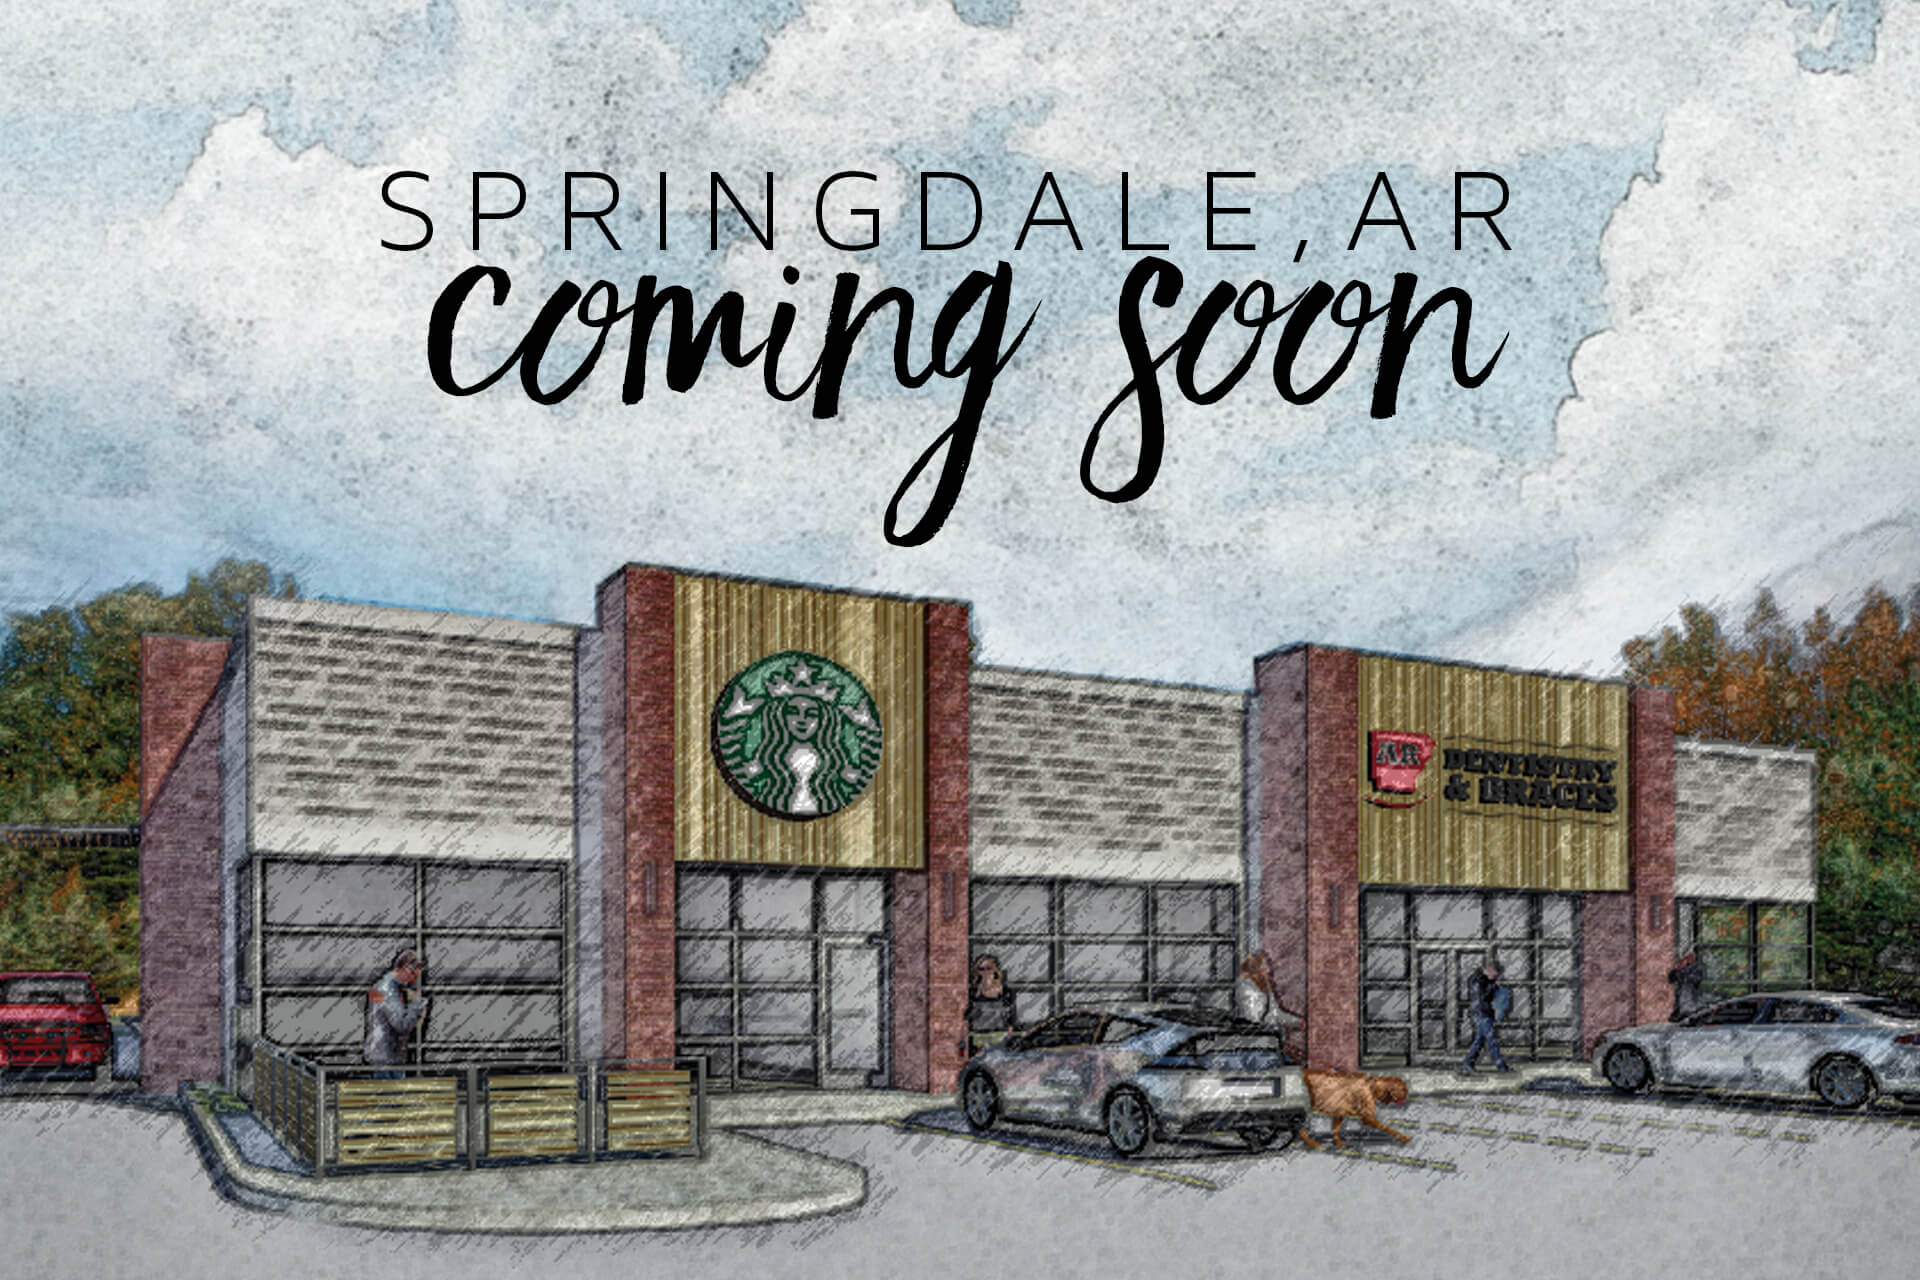 Press Release: Starbucks Opening in Springdale